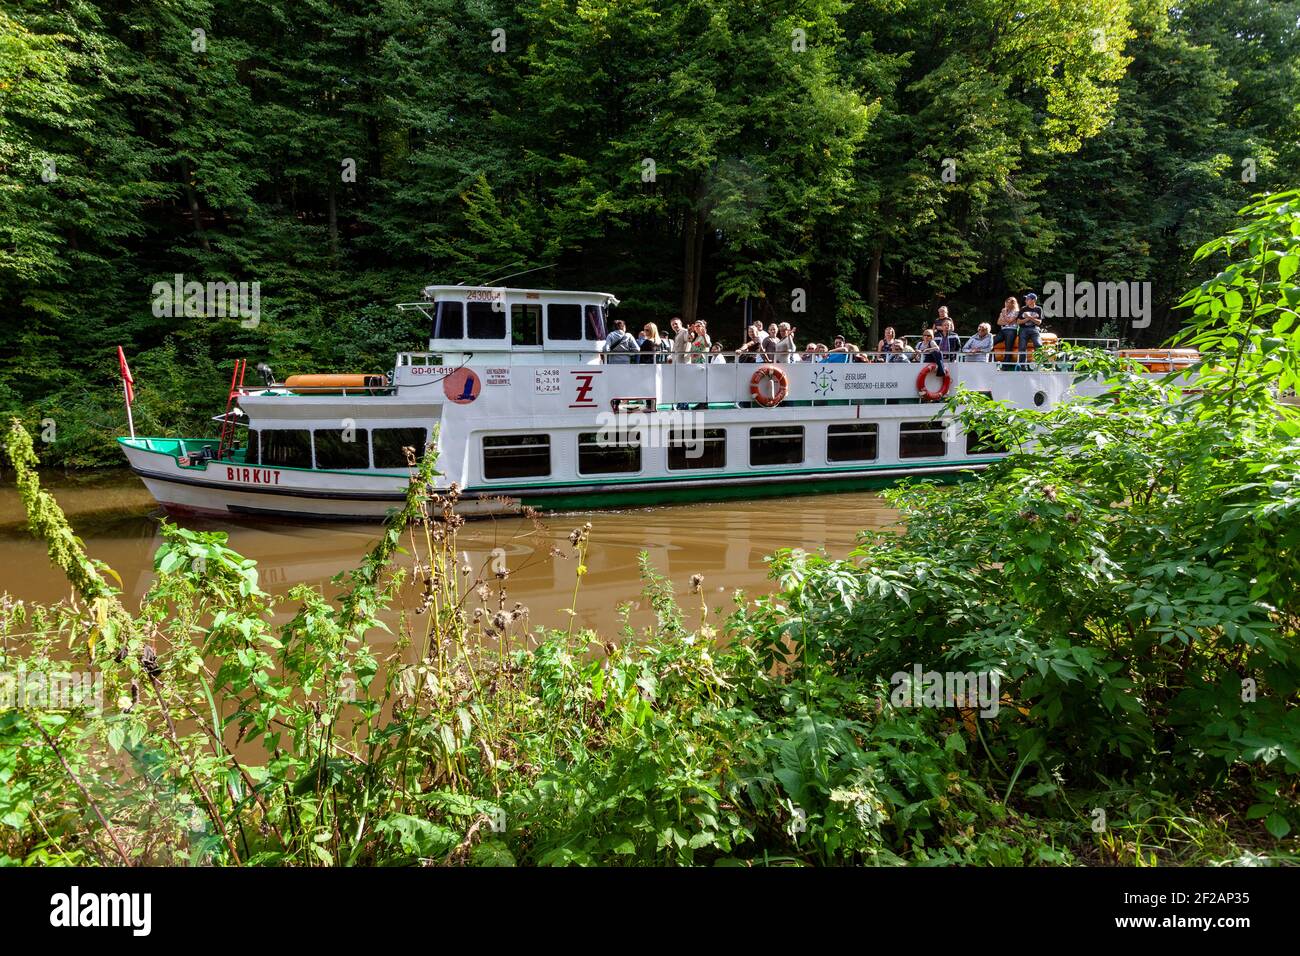 Tourist ship  Elblaski Canal Poland Stock Photo